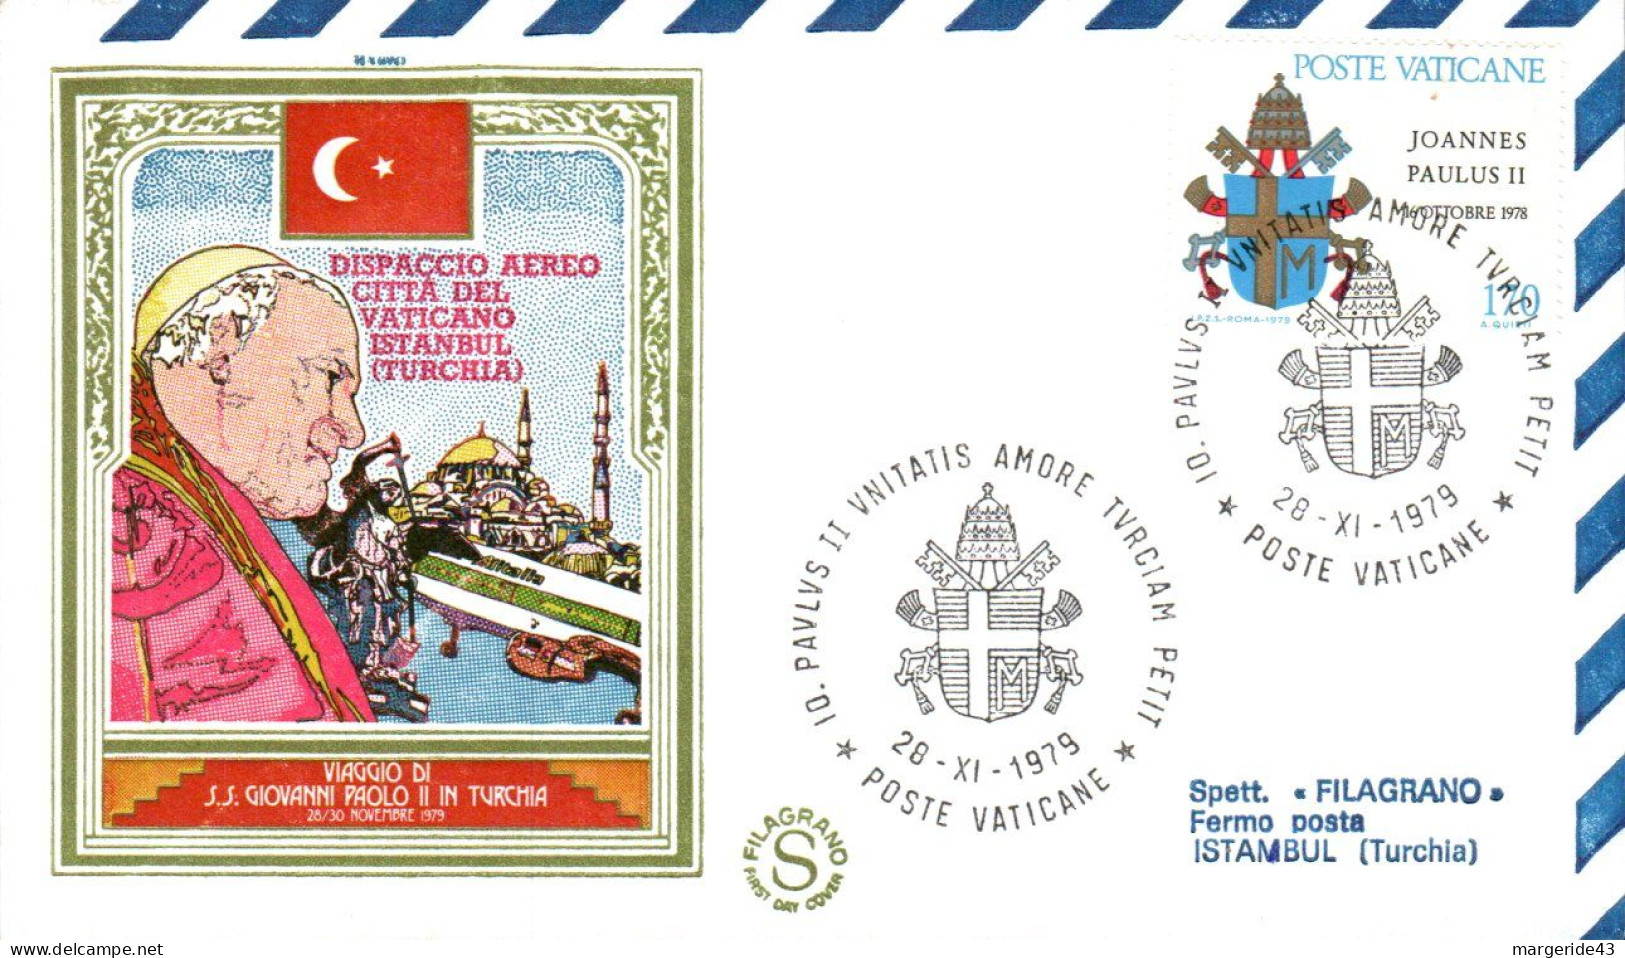 PAPE JEAN PAUL II LOT DE 22 LETTRES DE VOYAGES DU PONTIFE - Lots & Kiloware (mixtures) - Max. 999 Stamps